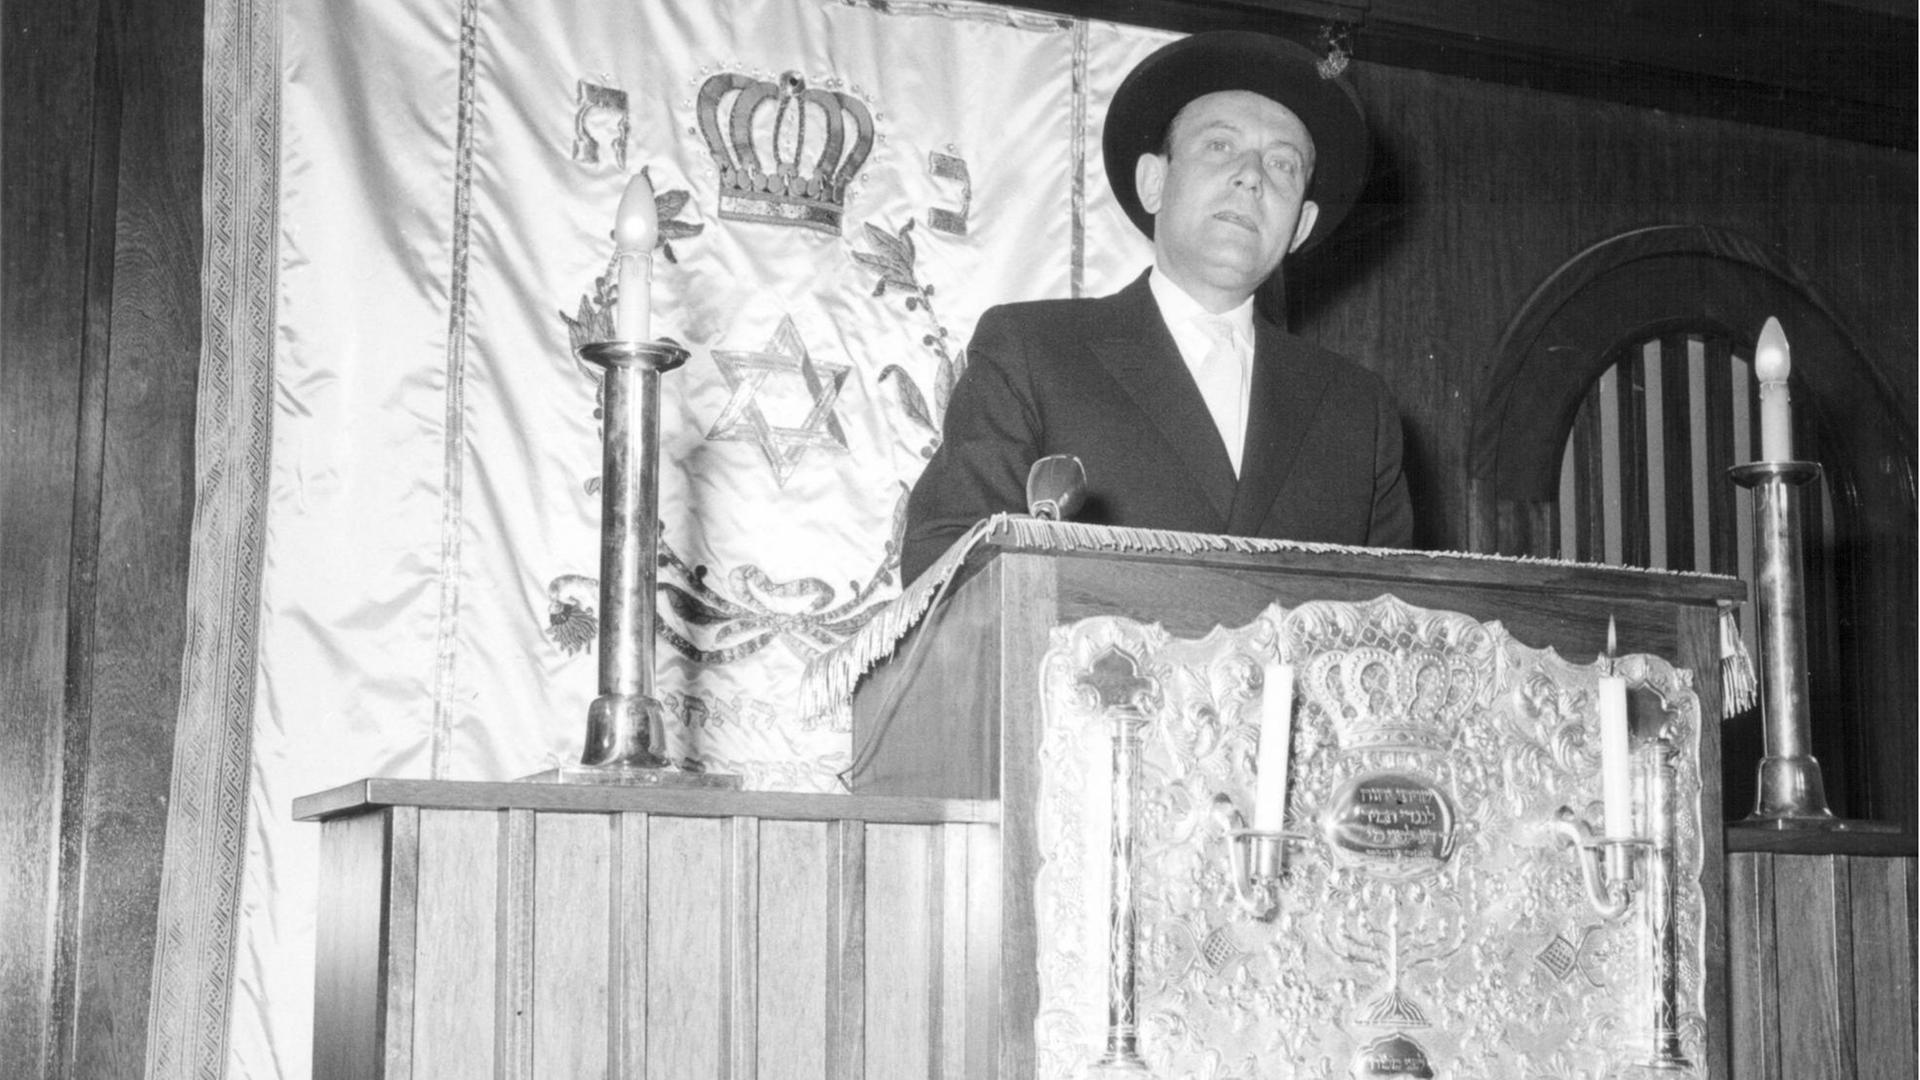 Heinz Galinski weiht am 22. April 1959 die Synagoge am Fraenkelufer in Berlin-Kreuzberg ein.